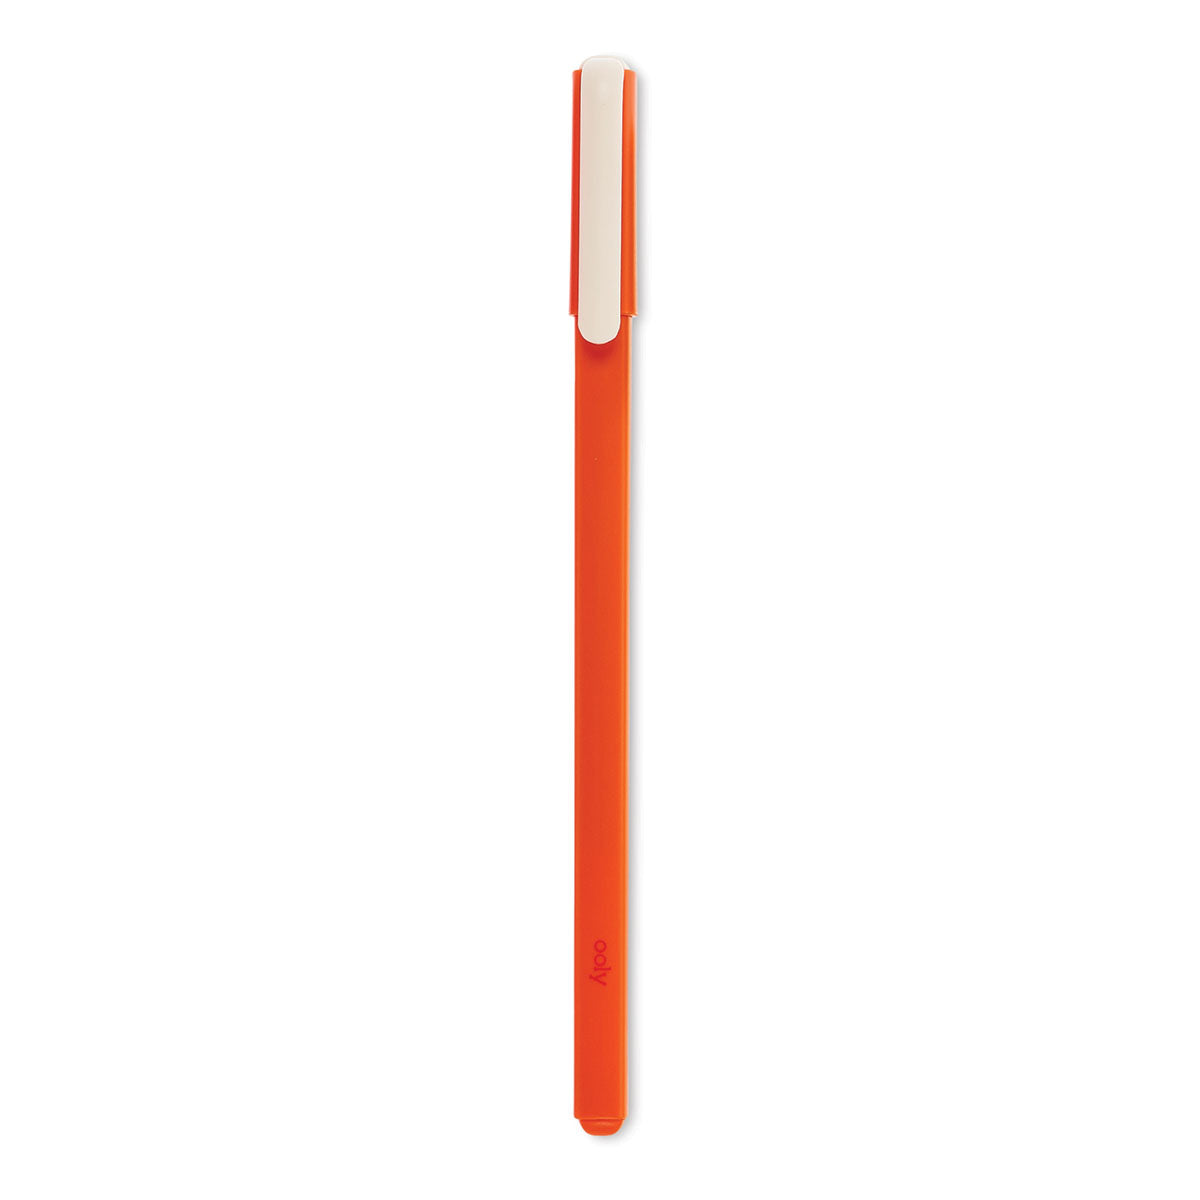 Ooly Fine Line Gel Pens - Orange by Ooly - K. A. Artist Shop